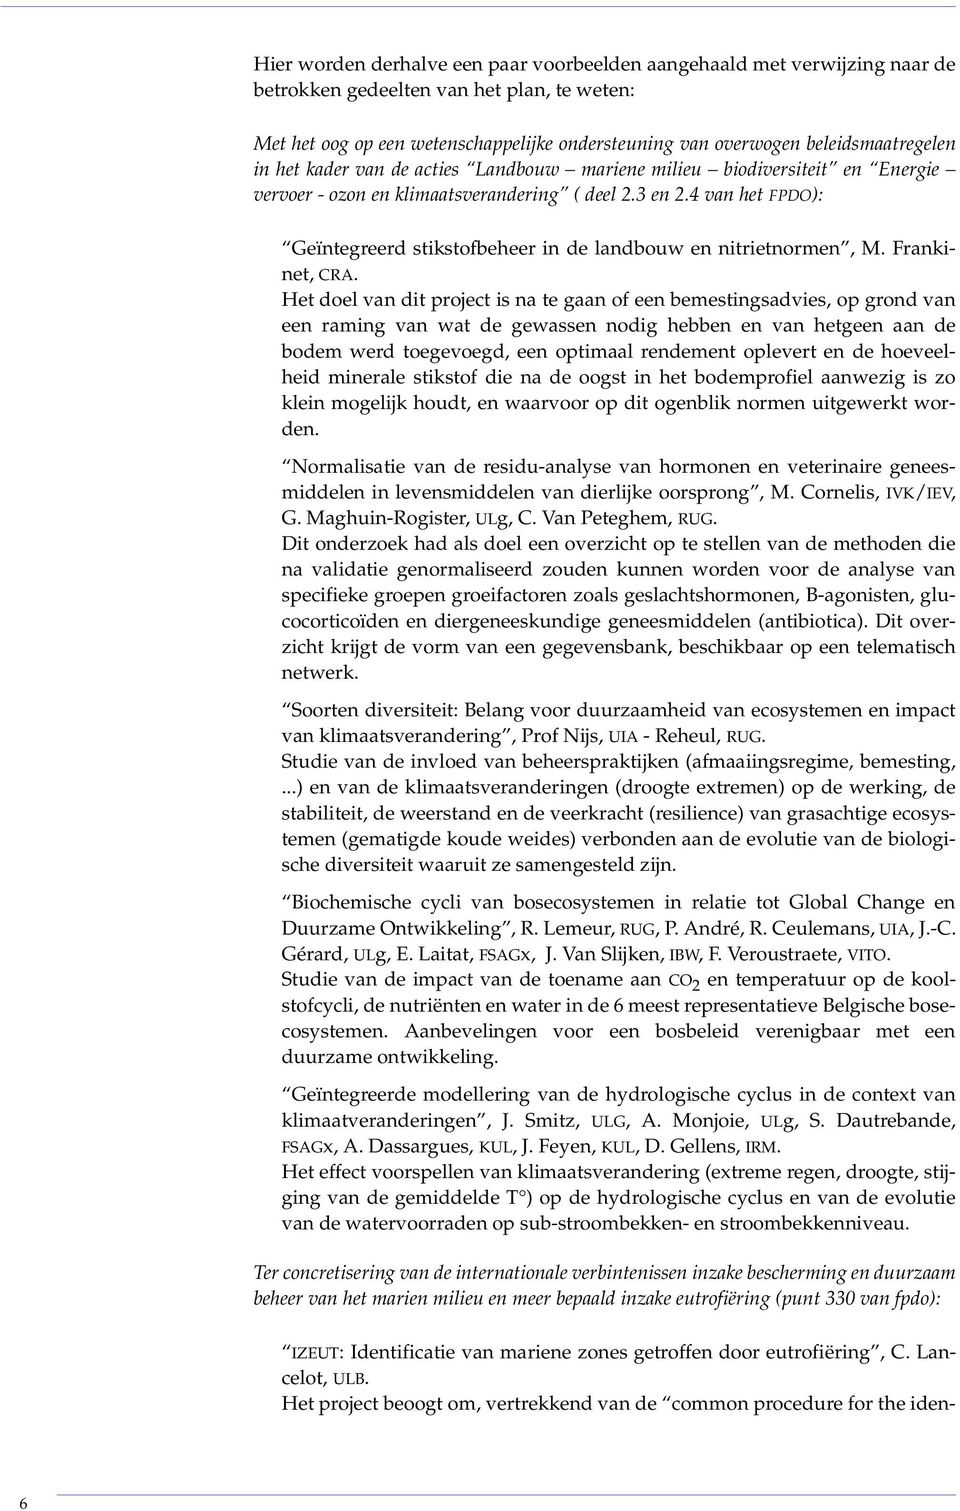 4 van het FPDO): Geïntegreerd stikstofbeheer in de landbouw en nitrietnormen, M. Frankinet, CRA.